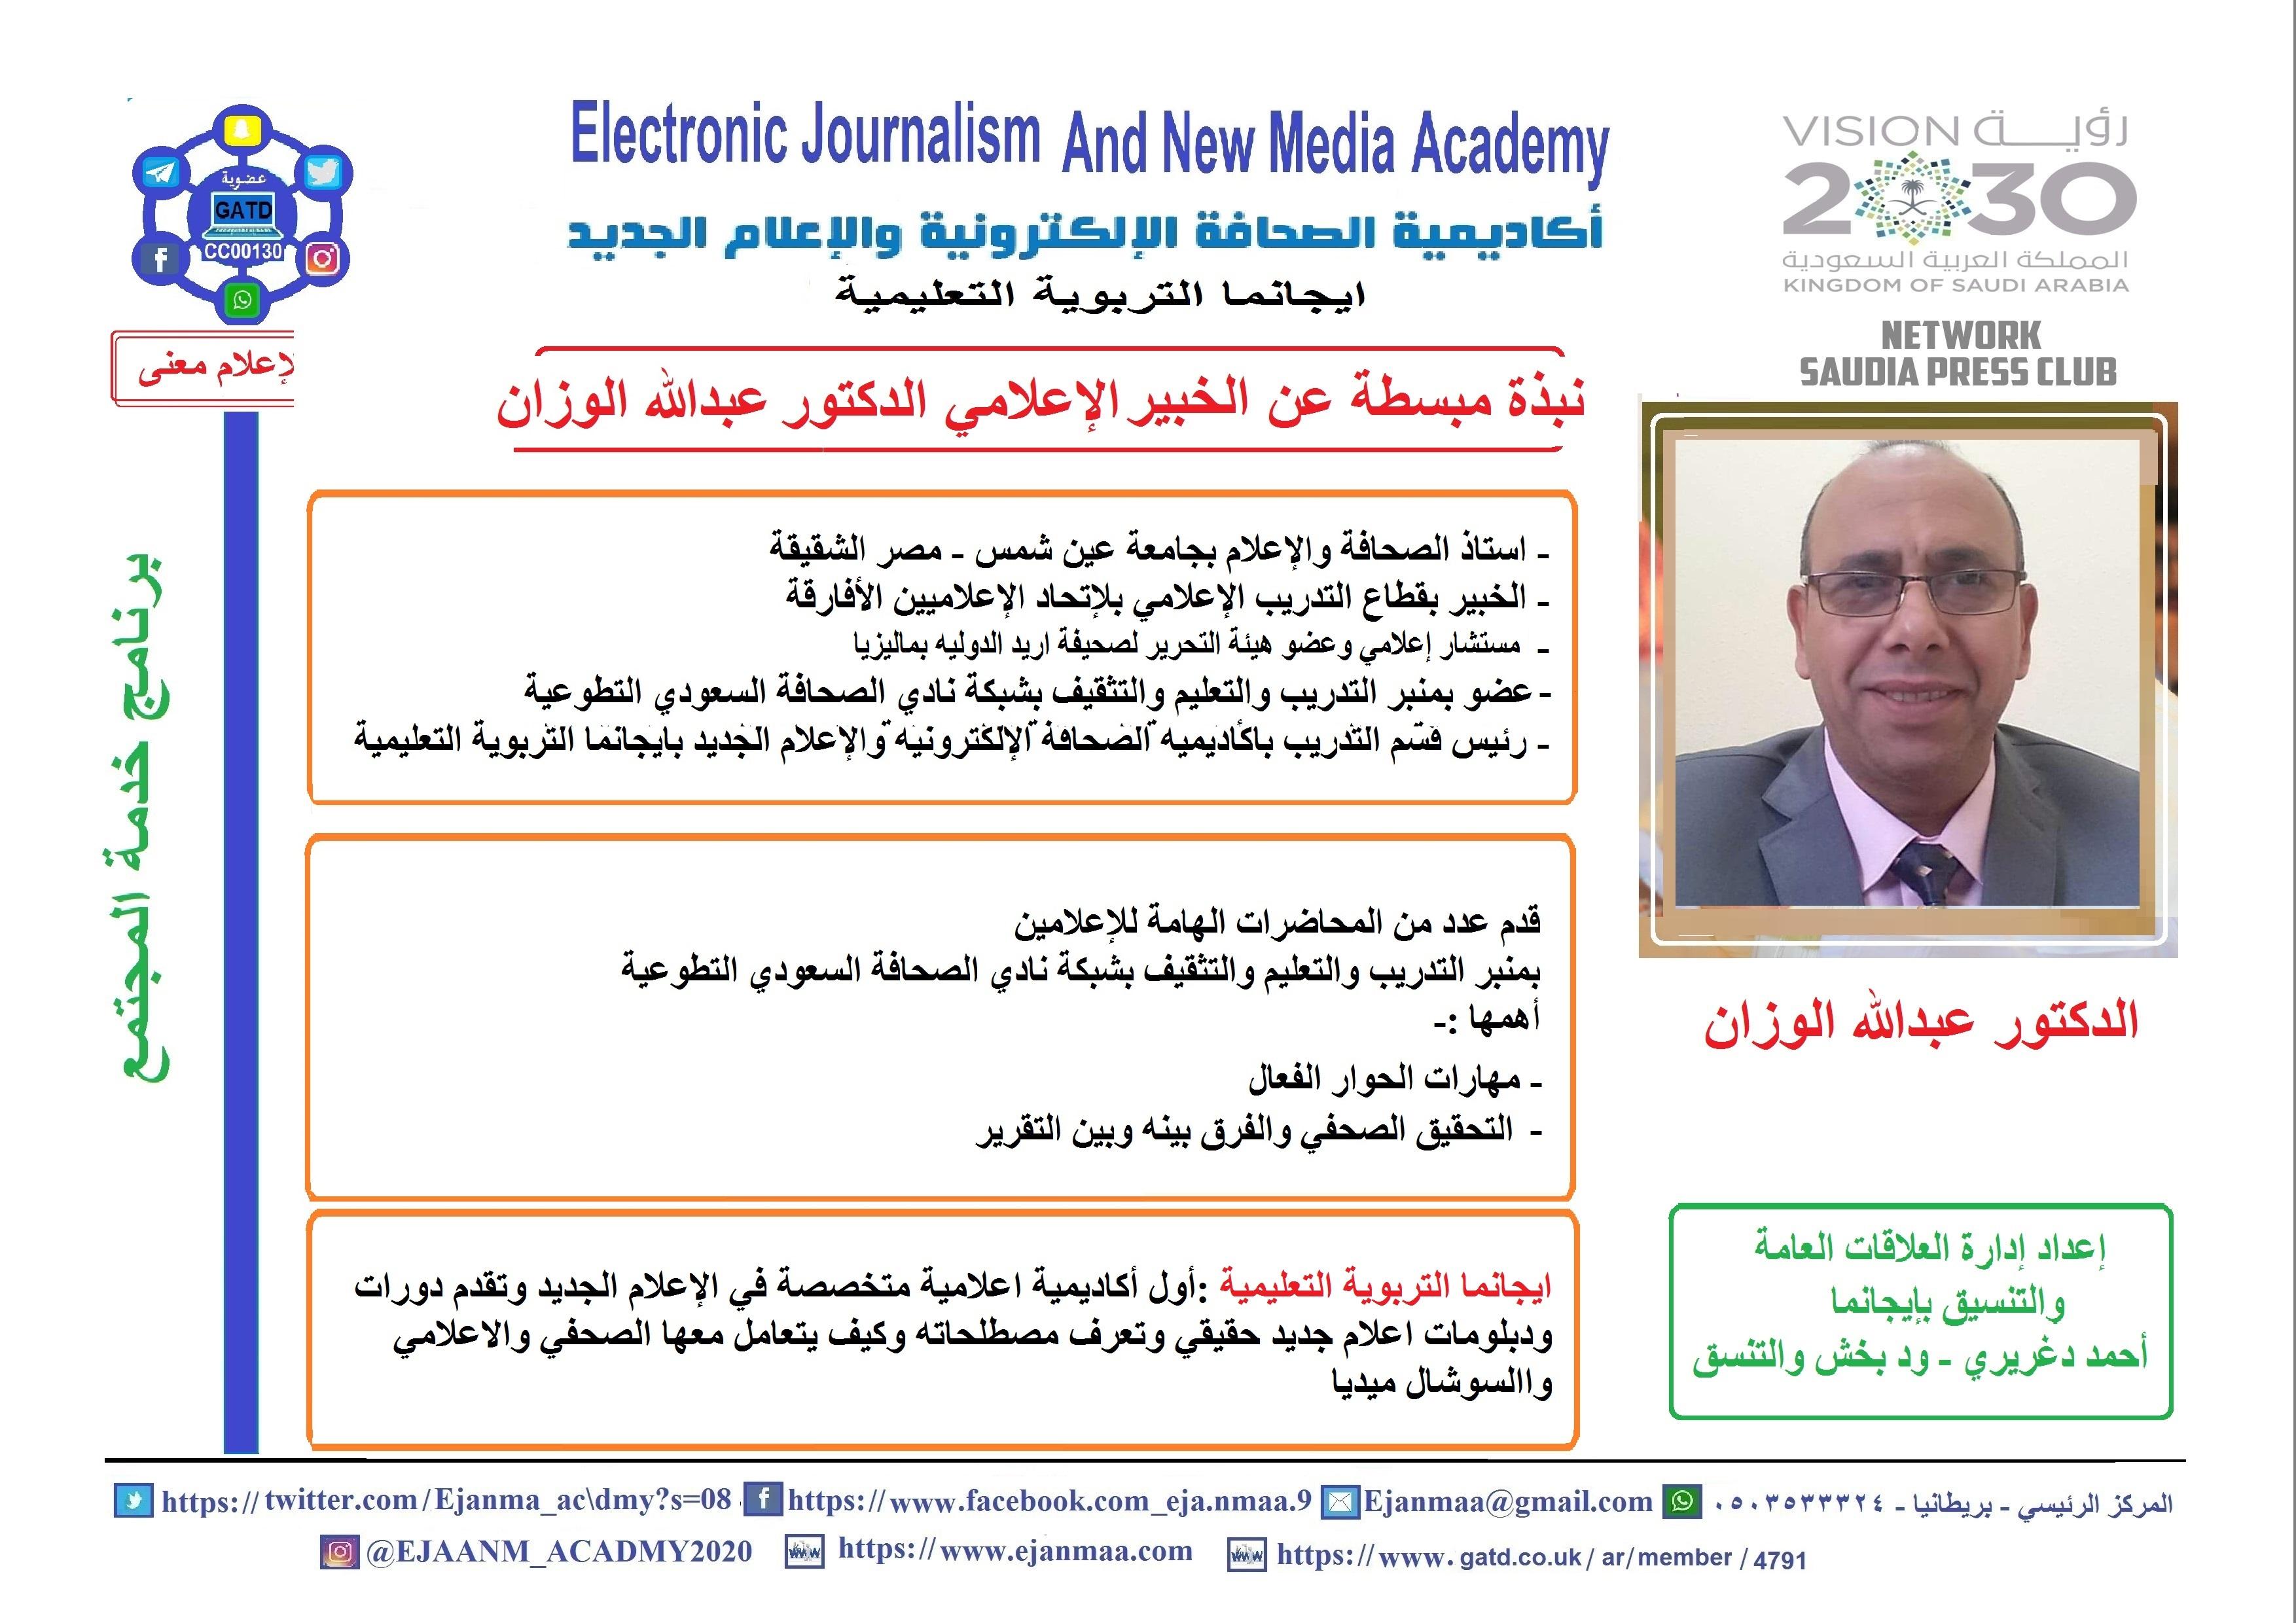 ايجانما التعليمية تواصل تقديم محاضراتها الإعلامية بمحاضرة لخبير الصحافة الدكتور عبدالله الوزان بعنوان (العلاقات العامة الرقمية في العصر الرقمي) يحضرها أكثر من 160 إعلامي من المملكة والدول العربية